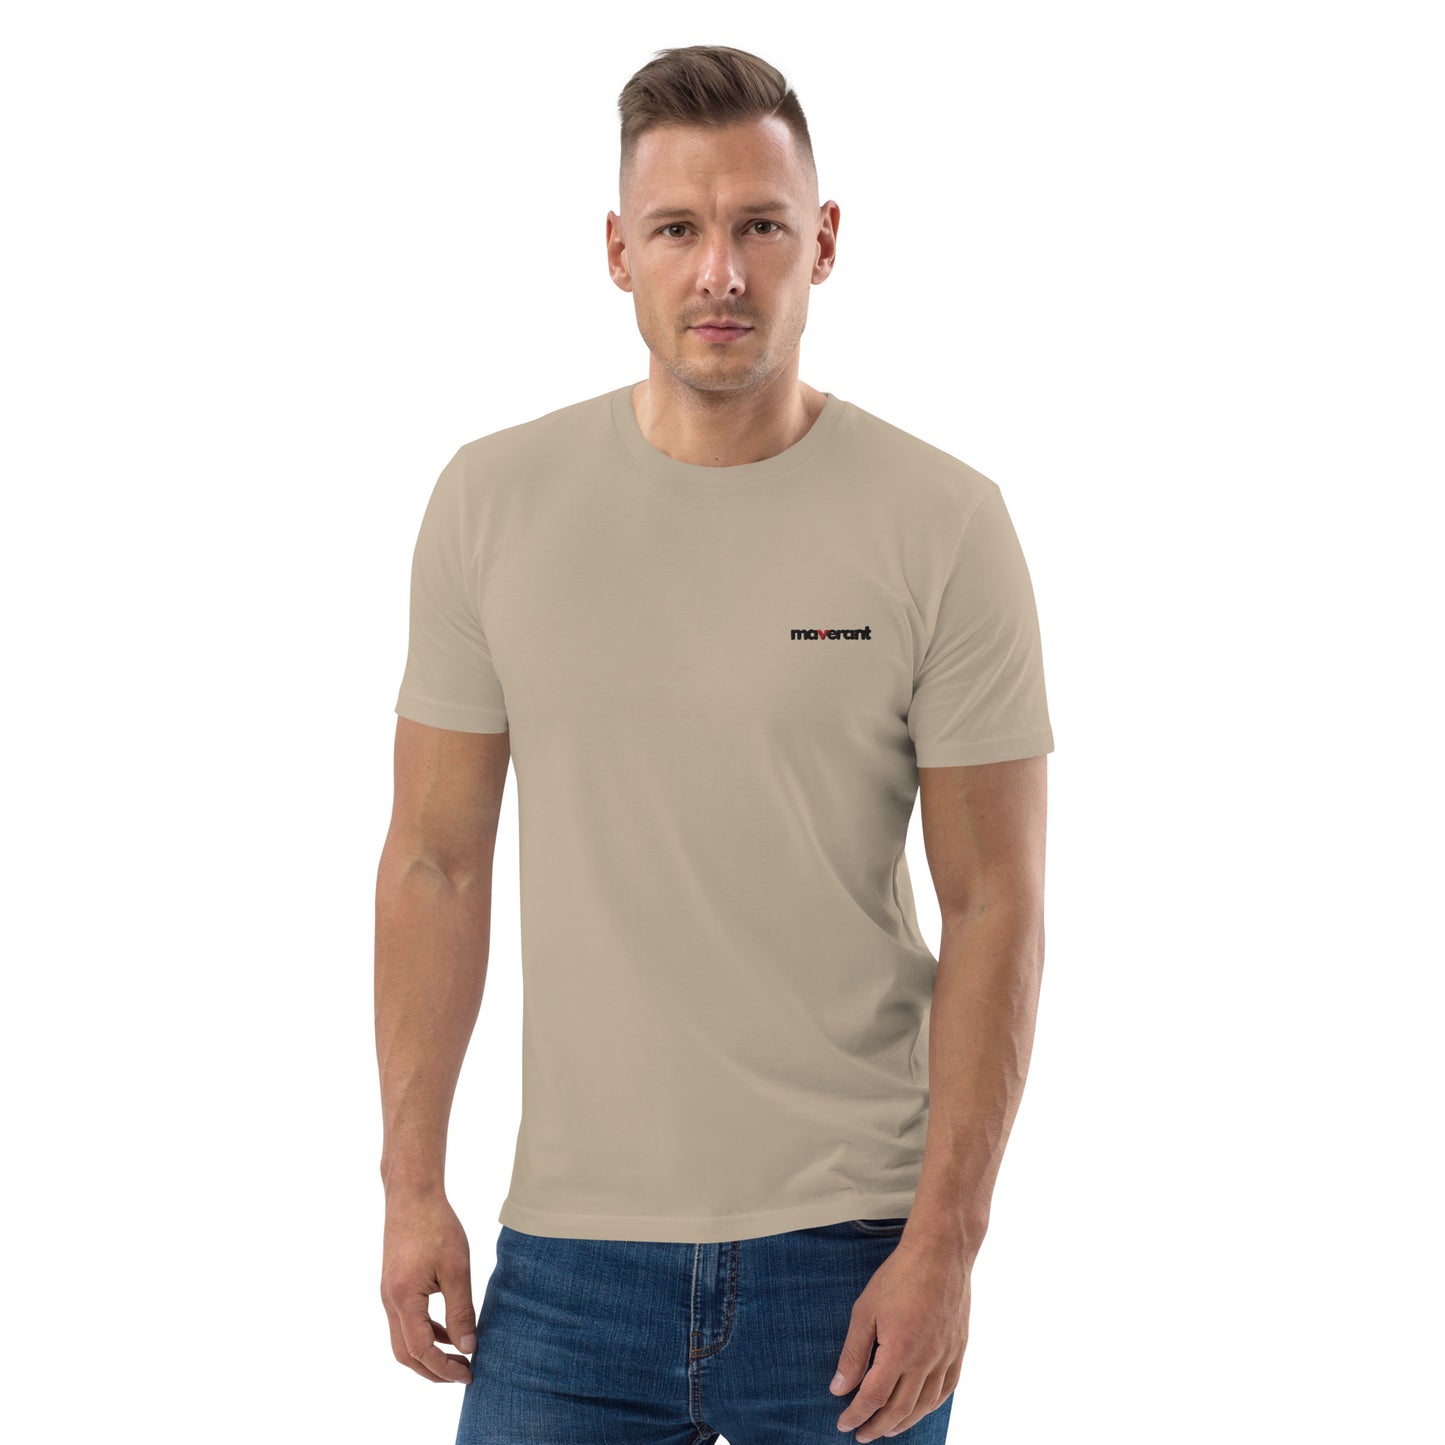 T-shirt in cotone organico unisex colore Desert Dust con logo ricamato